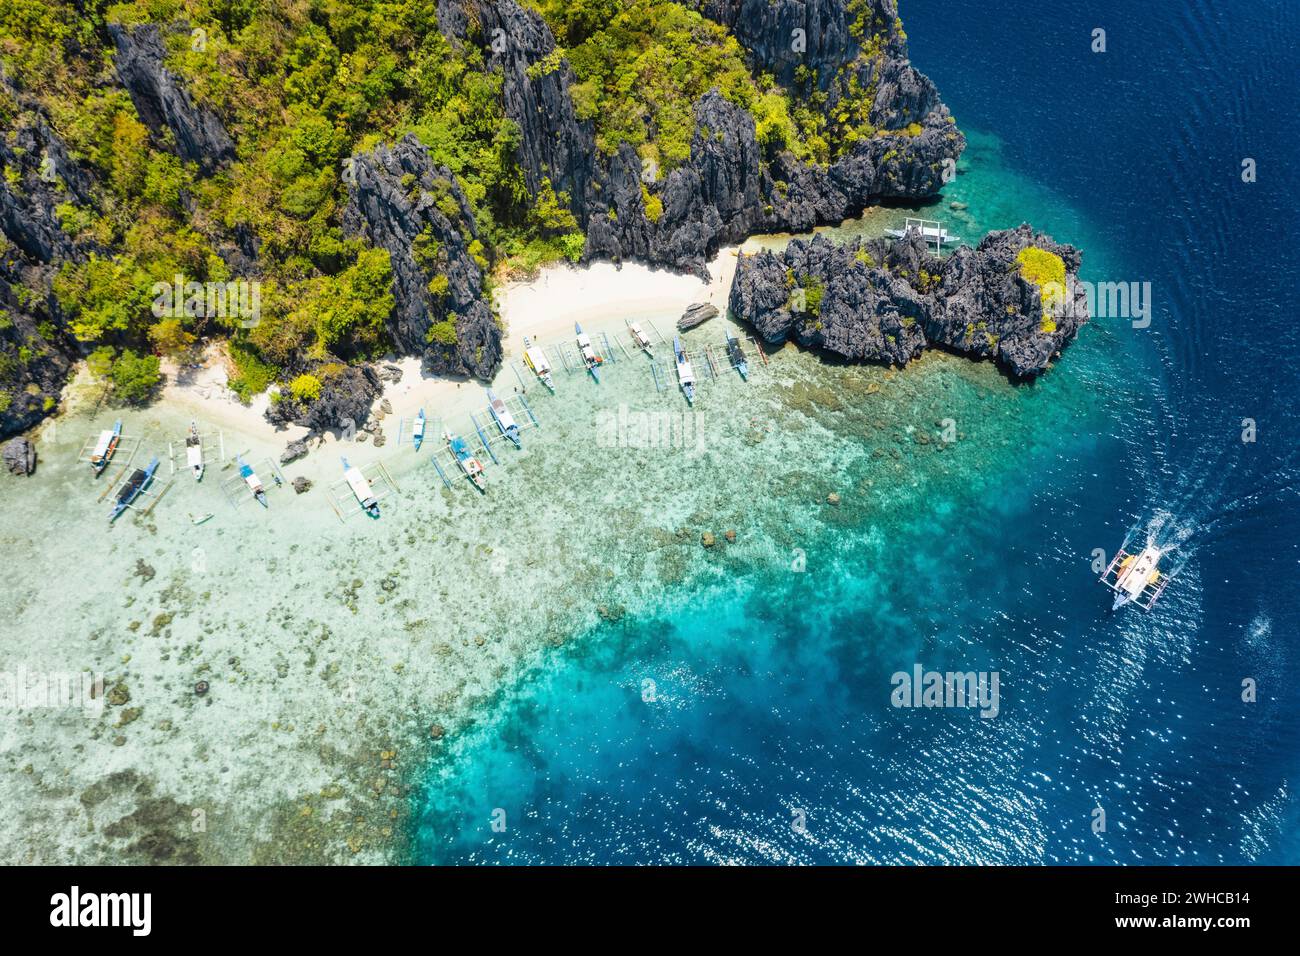 Bateaux de tourisme avec vue aérienne par drone amarrés à l'île tropicale de Shimizu. Rochers côtiers calcaires, plage de sable blanc dans l'eau bleue. El Nido, Palawan, Philippines. Banque D'Images